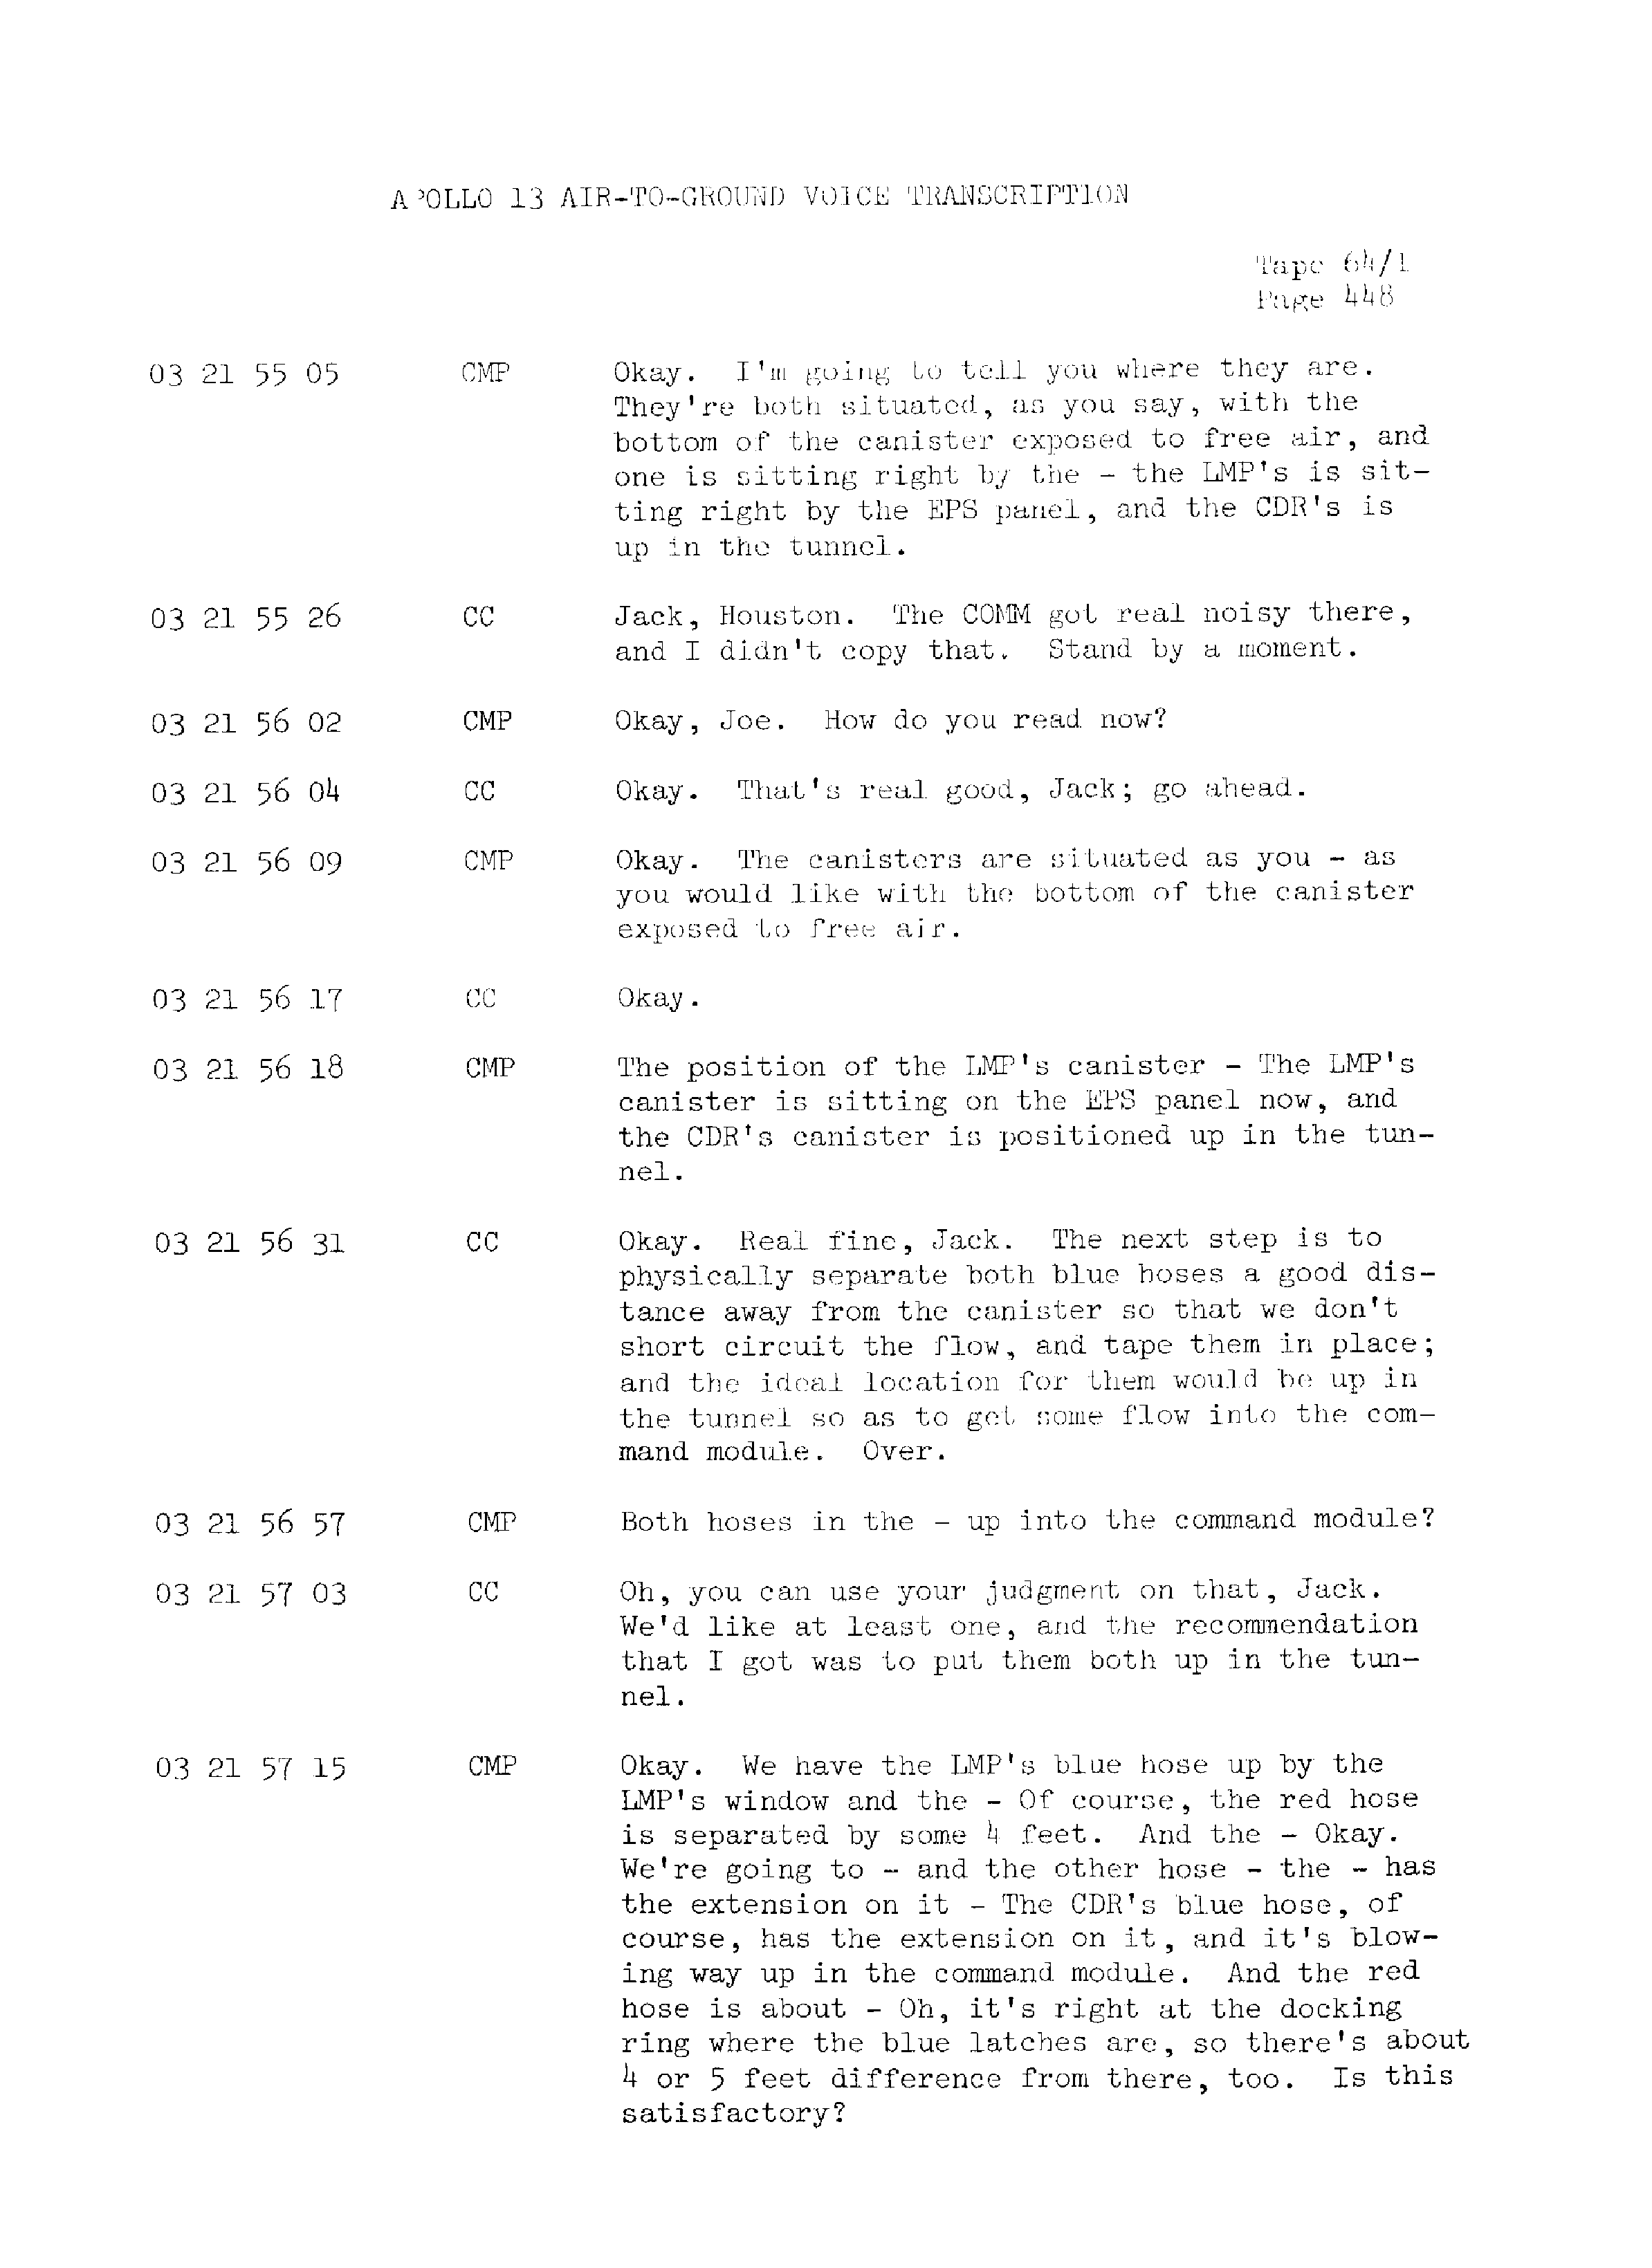 Page 455 of Apollo 13’s original transcript